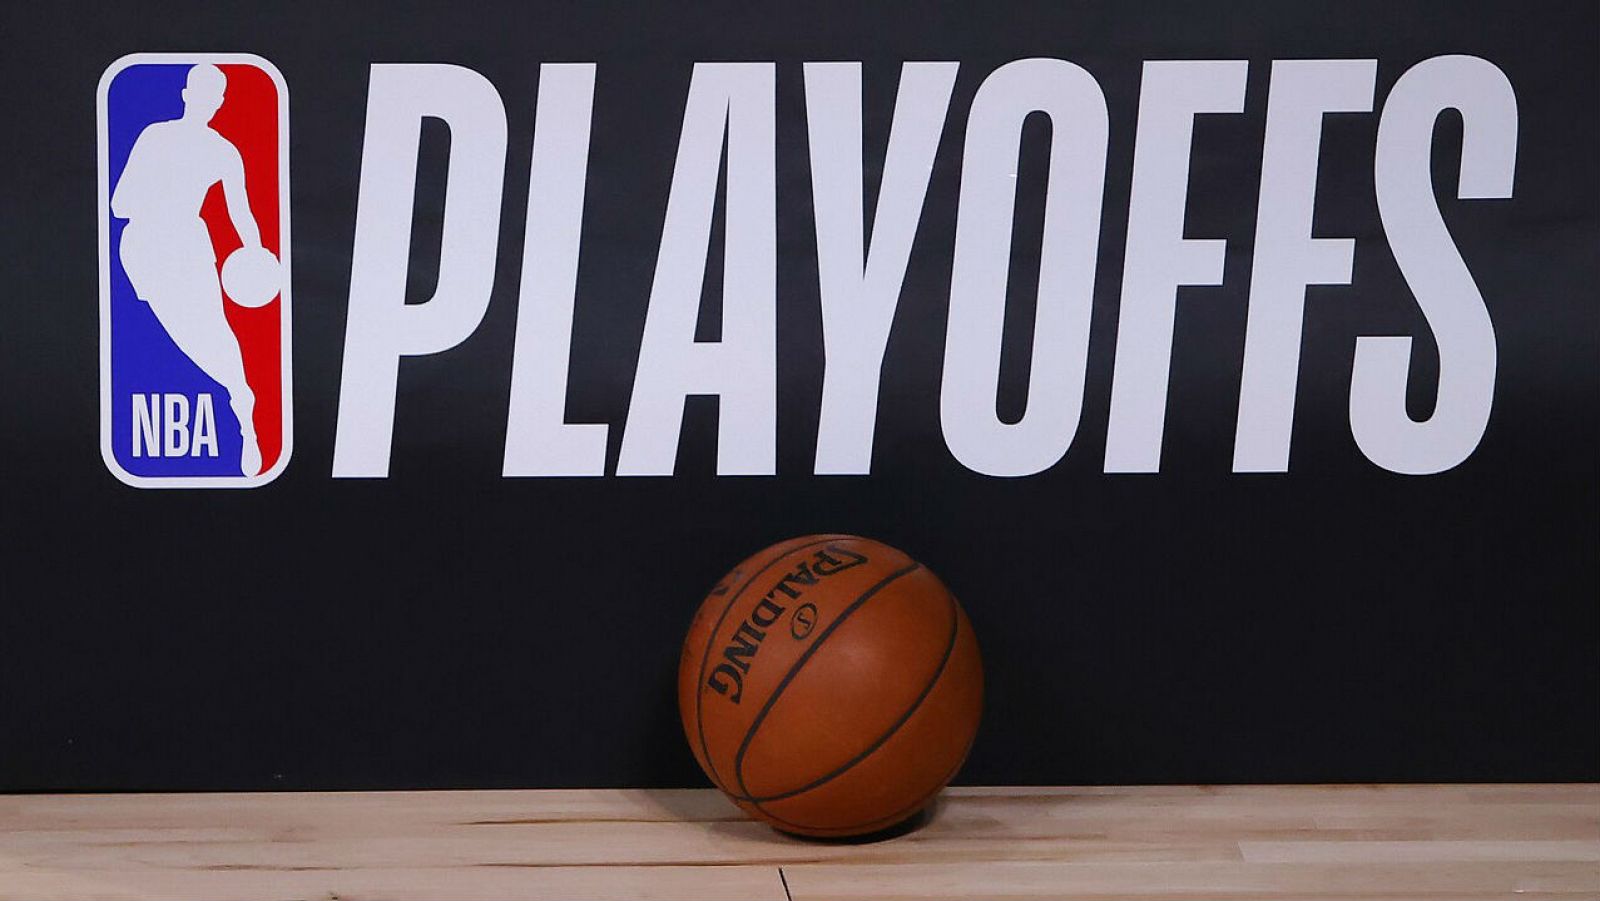 Una pelota de baloncesto se encuentra junto al logotipo de los Playoffs de la NBA.